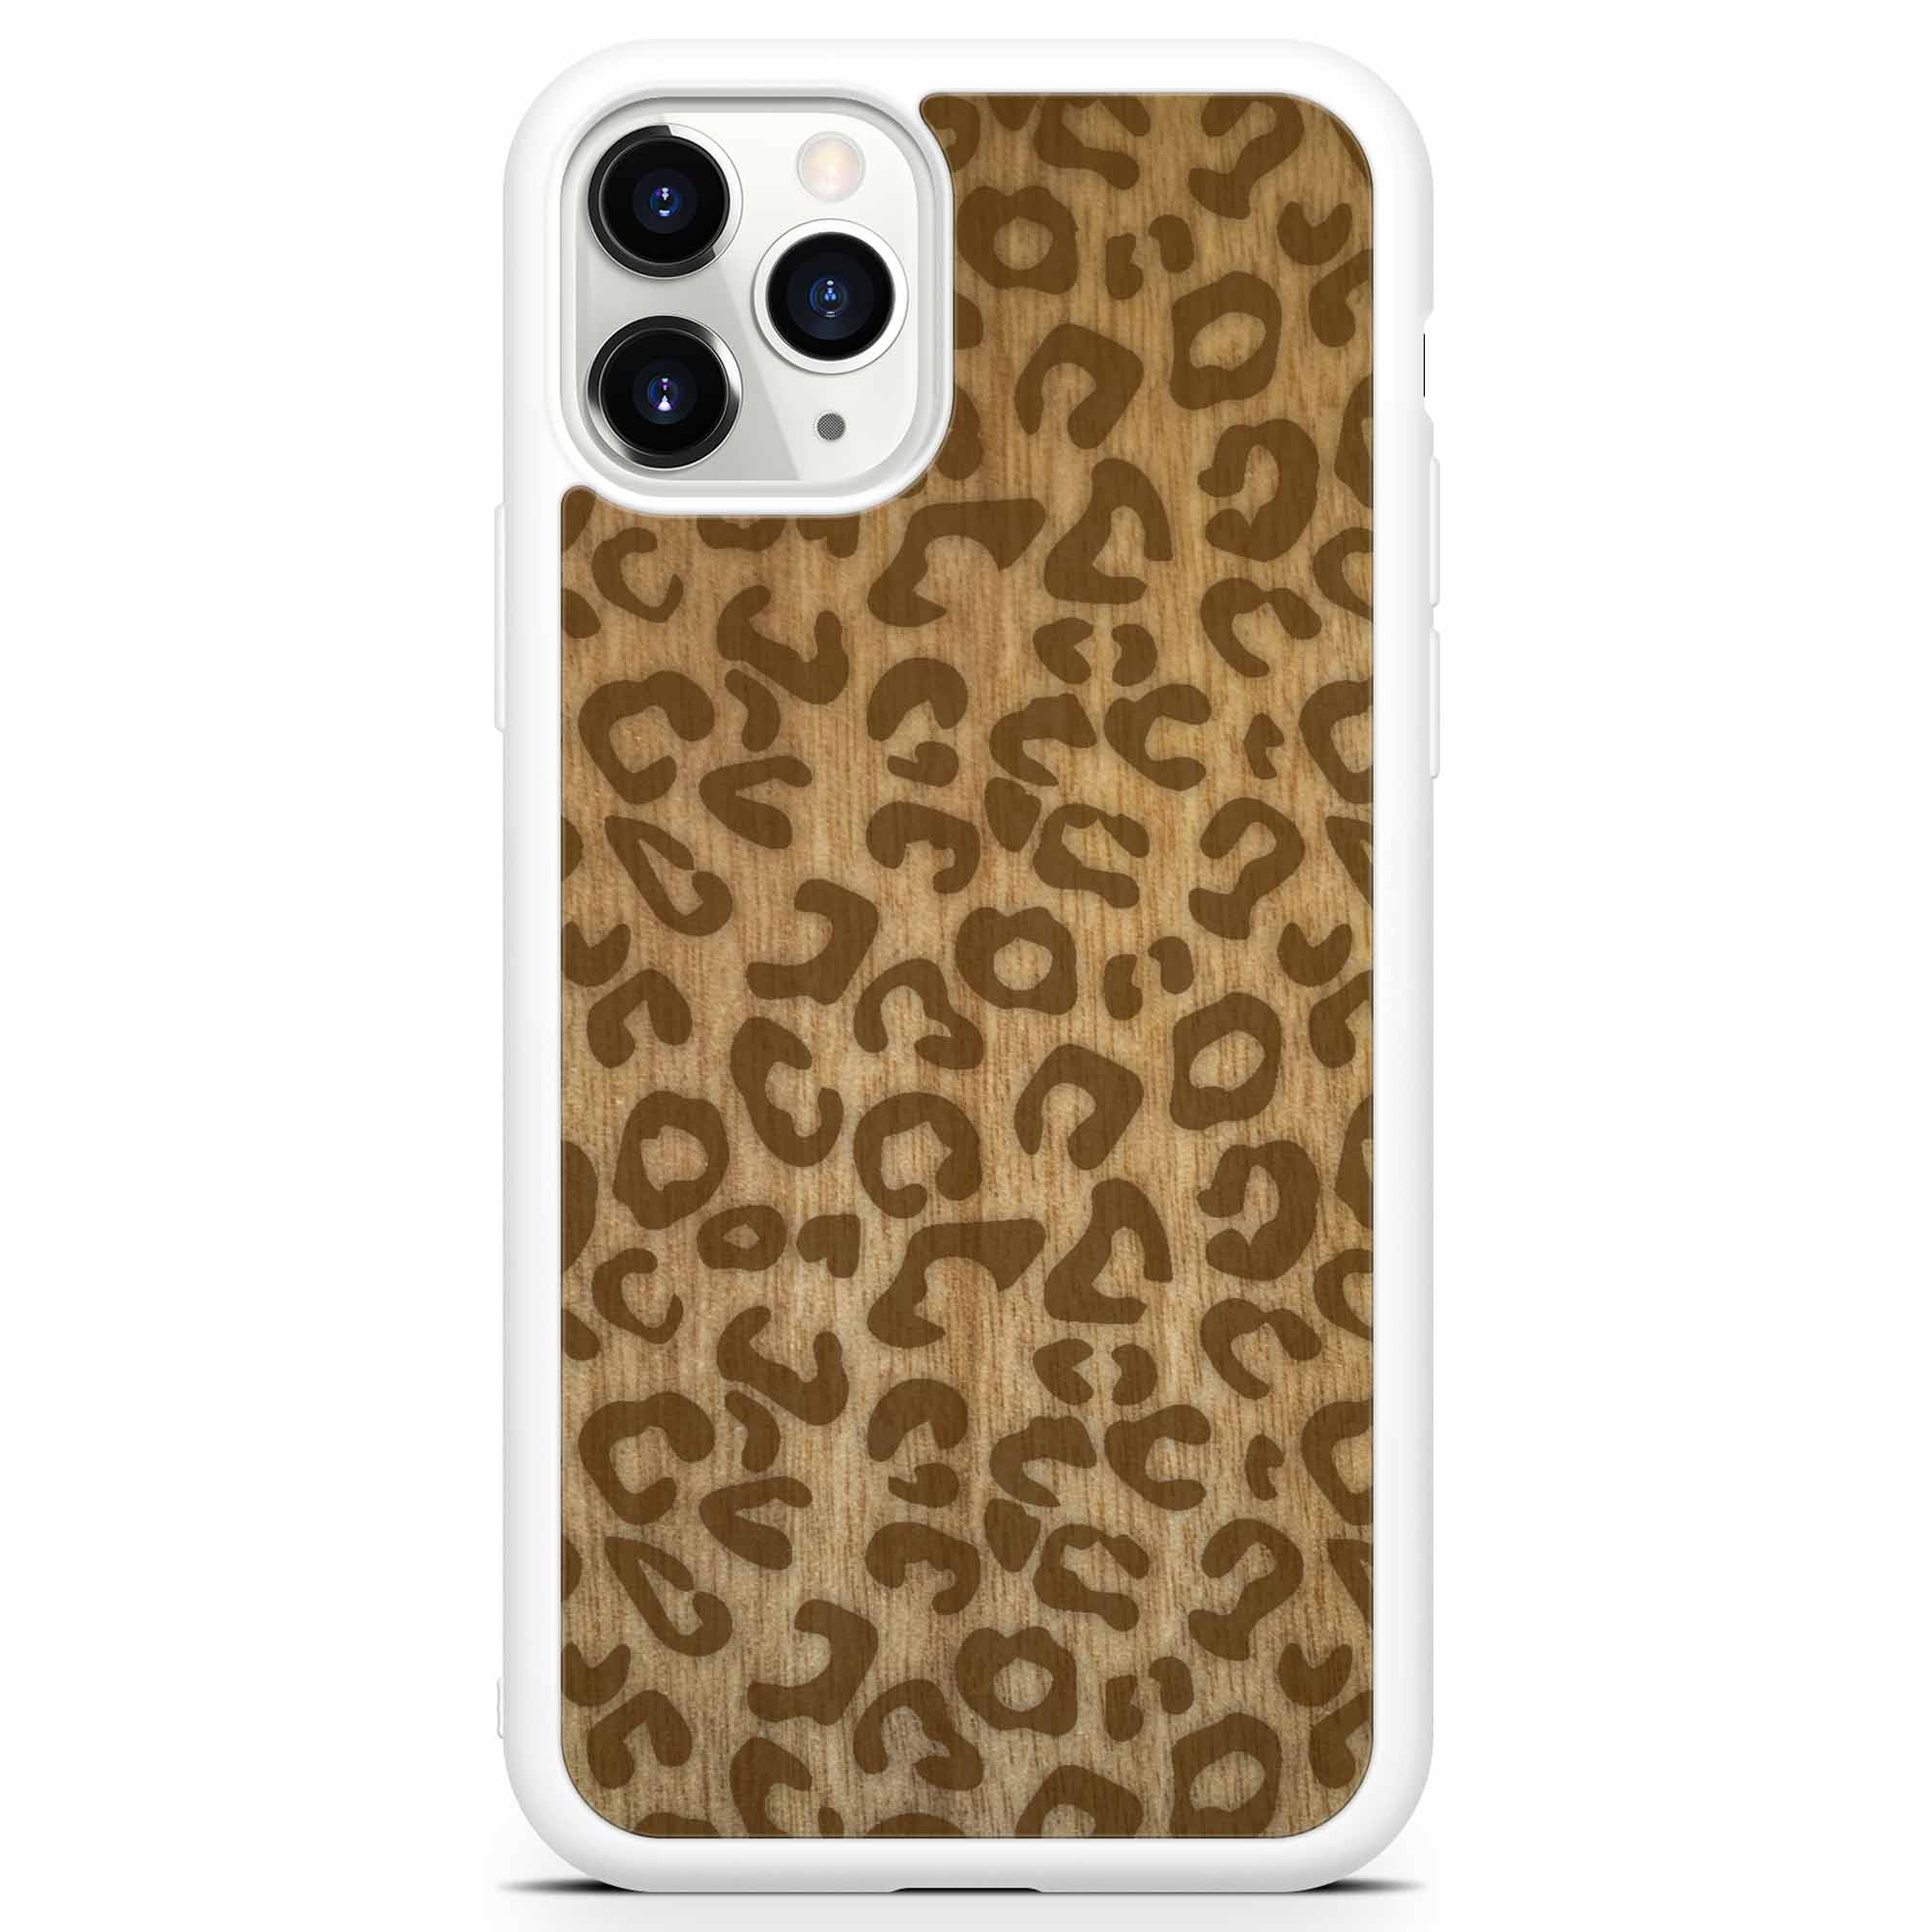 Custodia per telefono bianca in legno con stampa ghepardo per iPhone 11 Pro Max